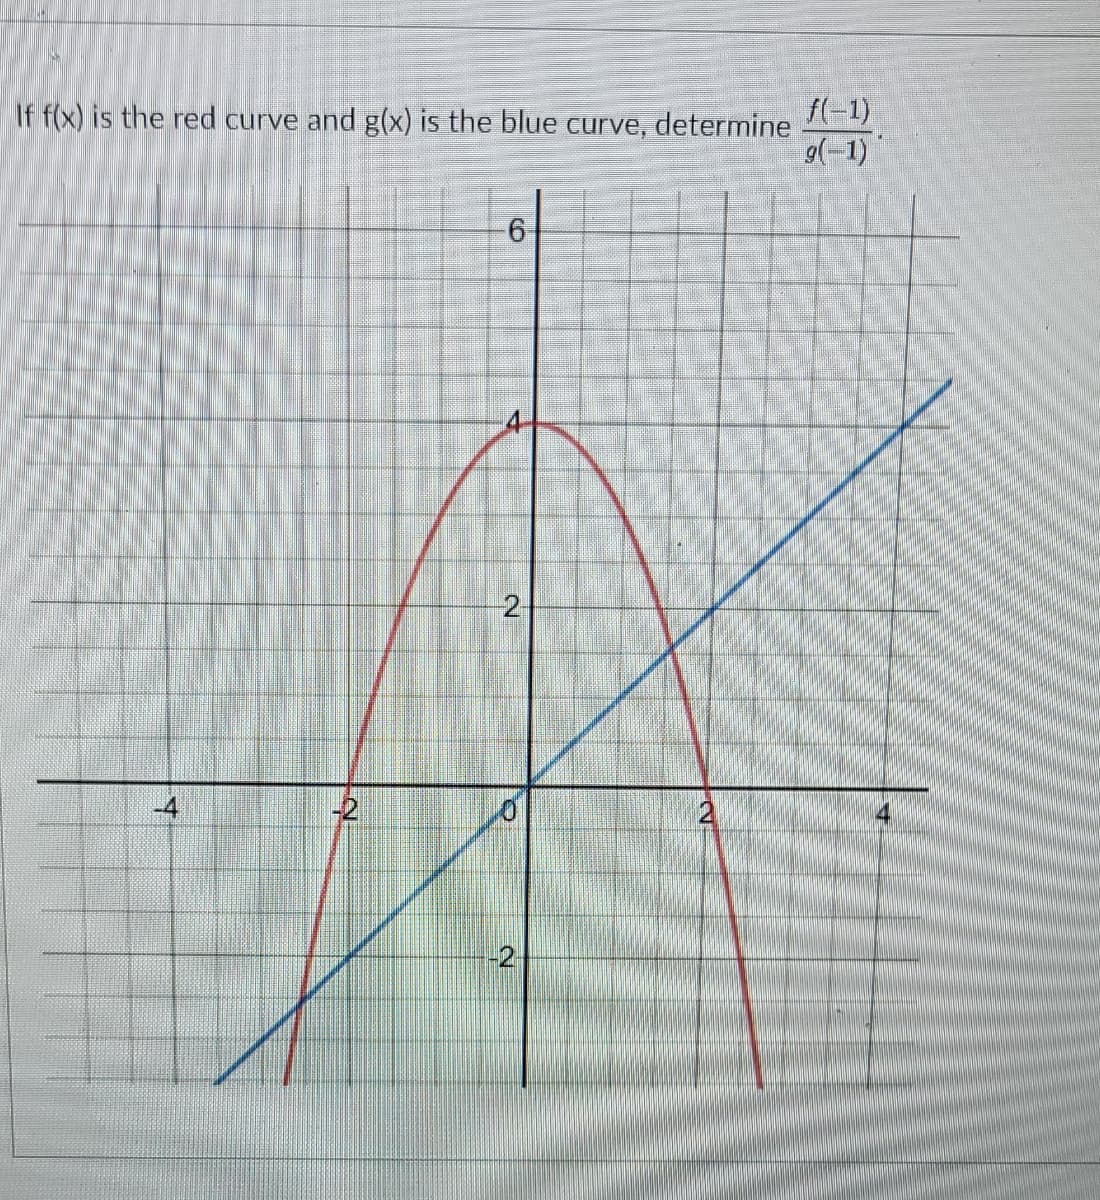 If f(x) is the red curve and g(x) is the blue curve, determine
f(-1)
9(-1)
6-
2
-2
-2
